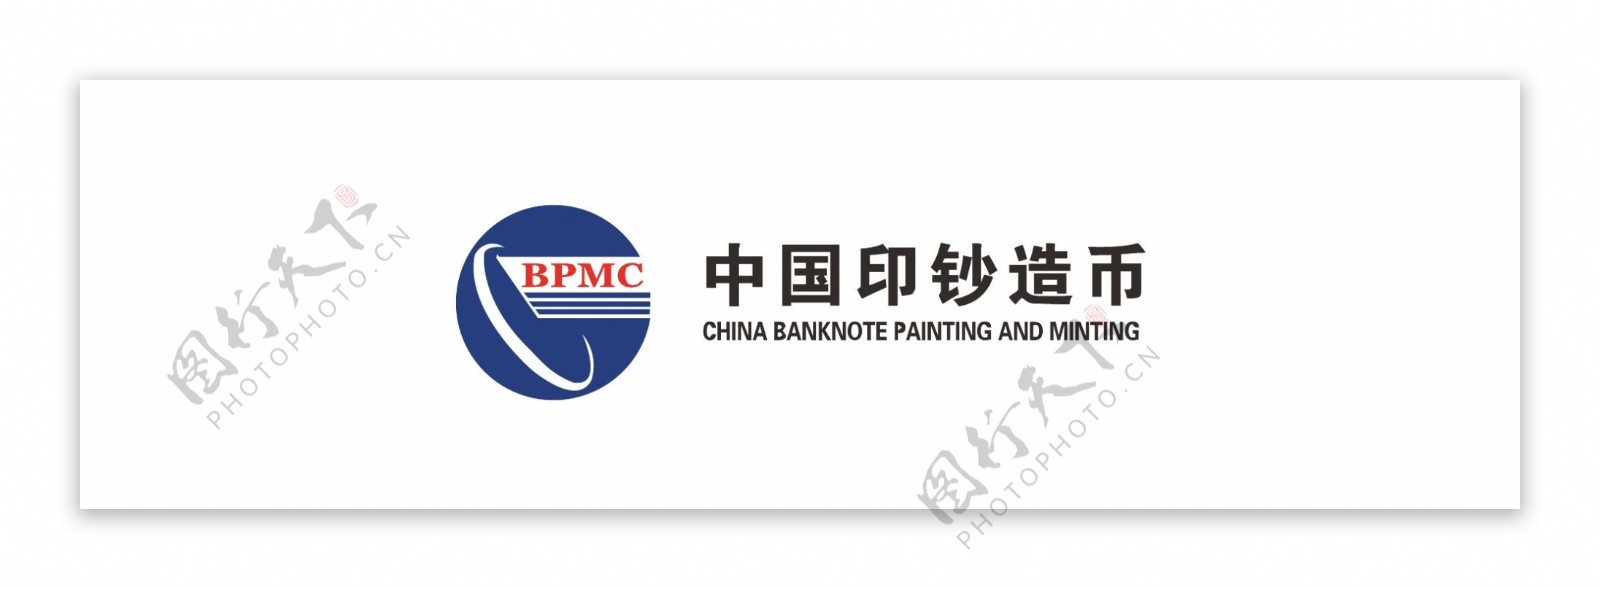 中国印钞造币标题logo